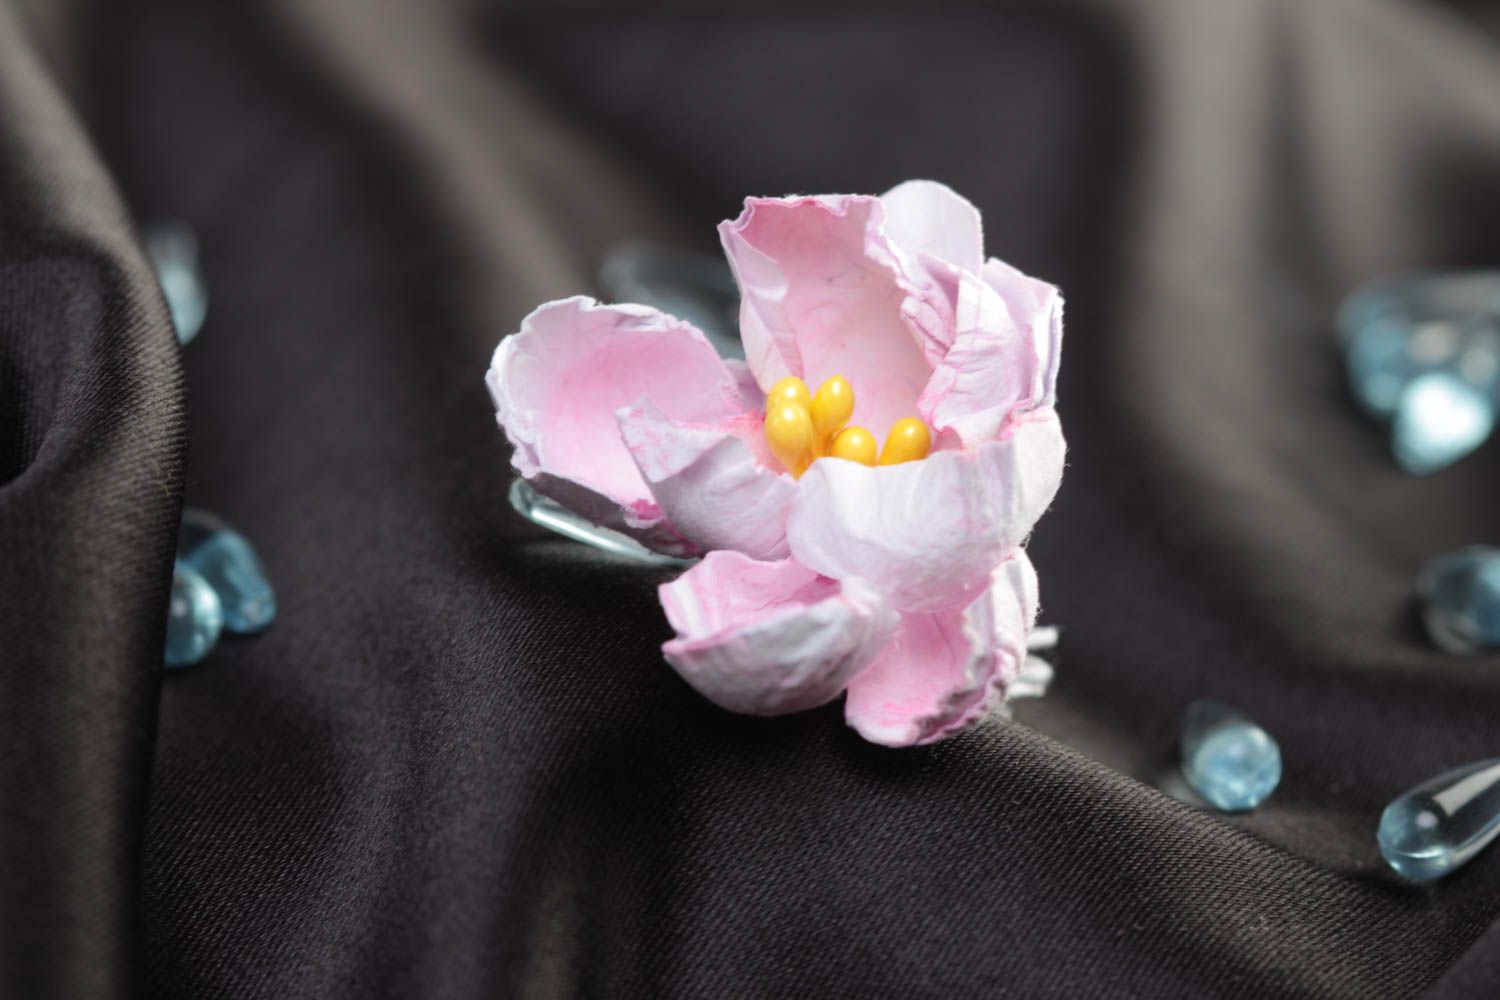 Бумажный цветок для скрапбукинга ручной работы расписаный акварелью розовый фото 1